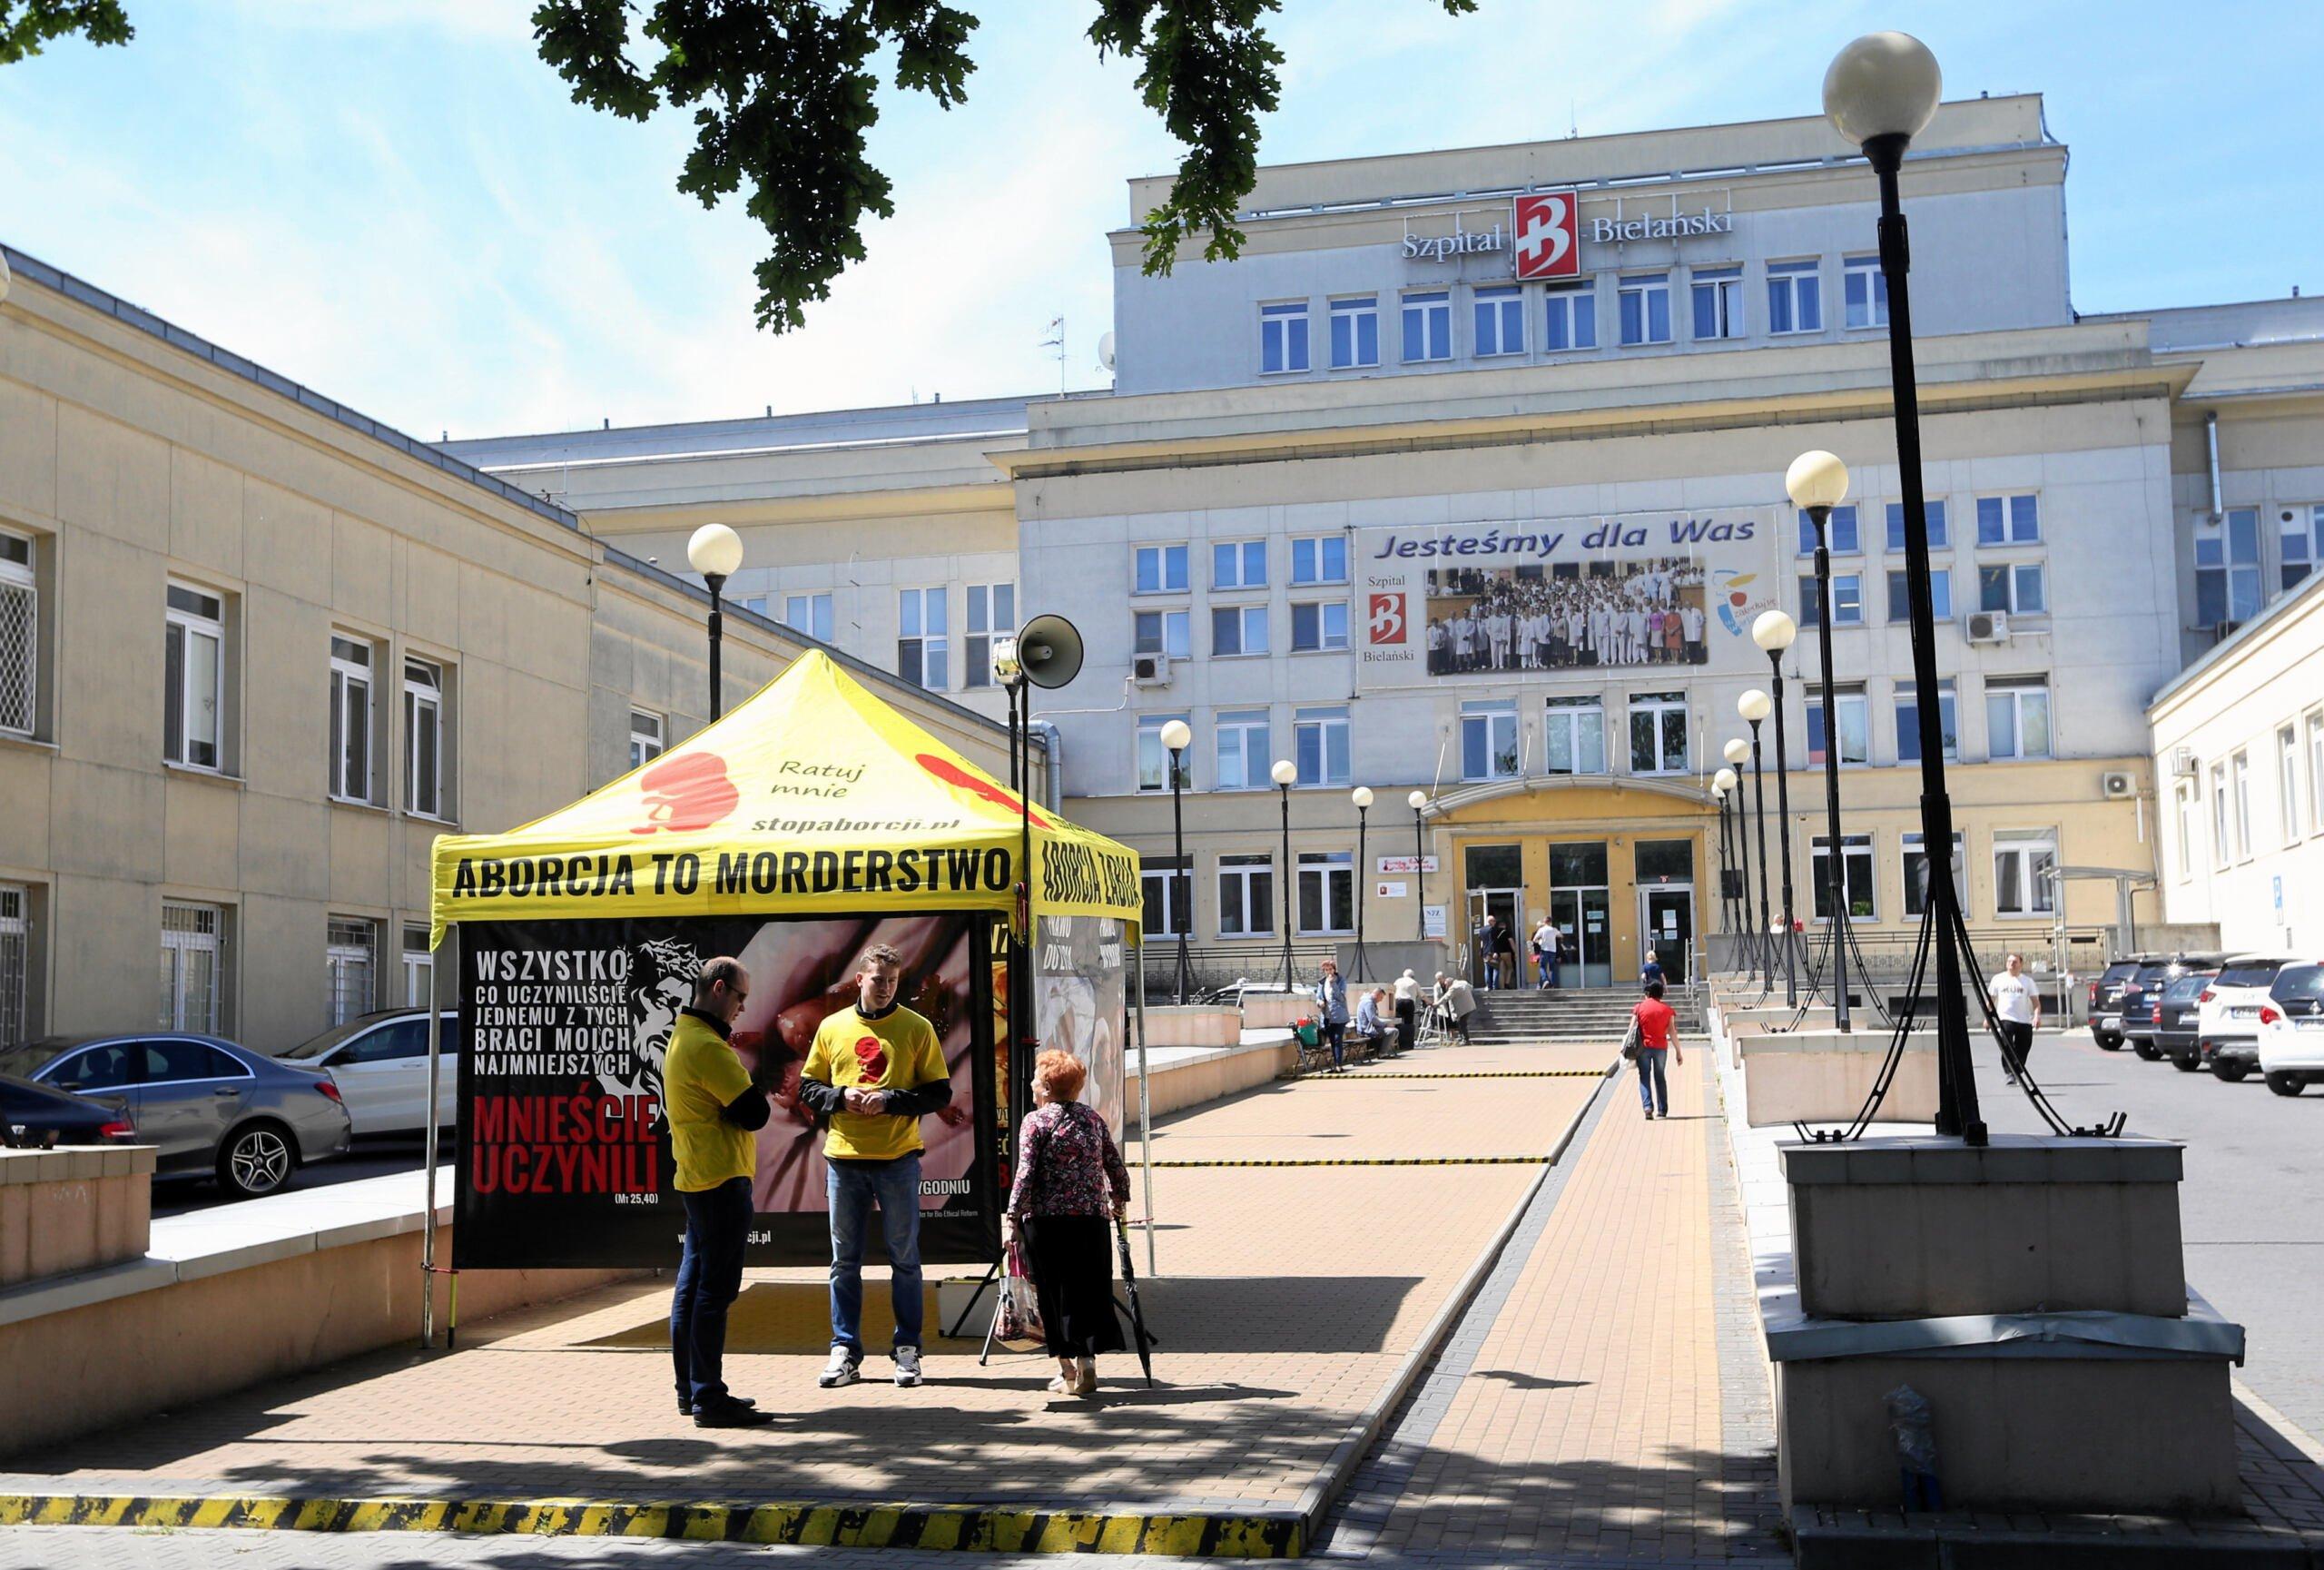 Namiot antyaborcyjny przed szpitalem Bielanskim w Warszawie